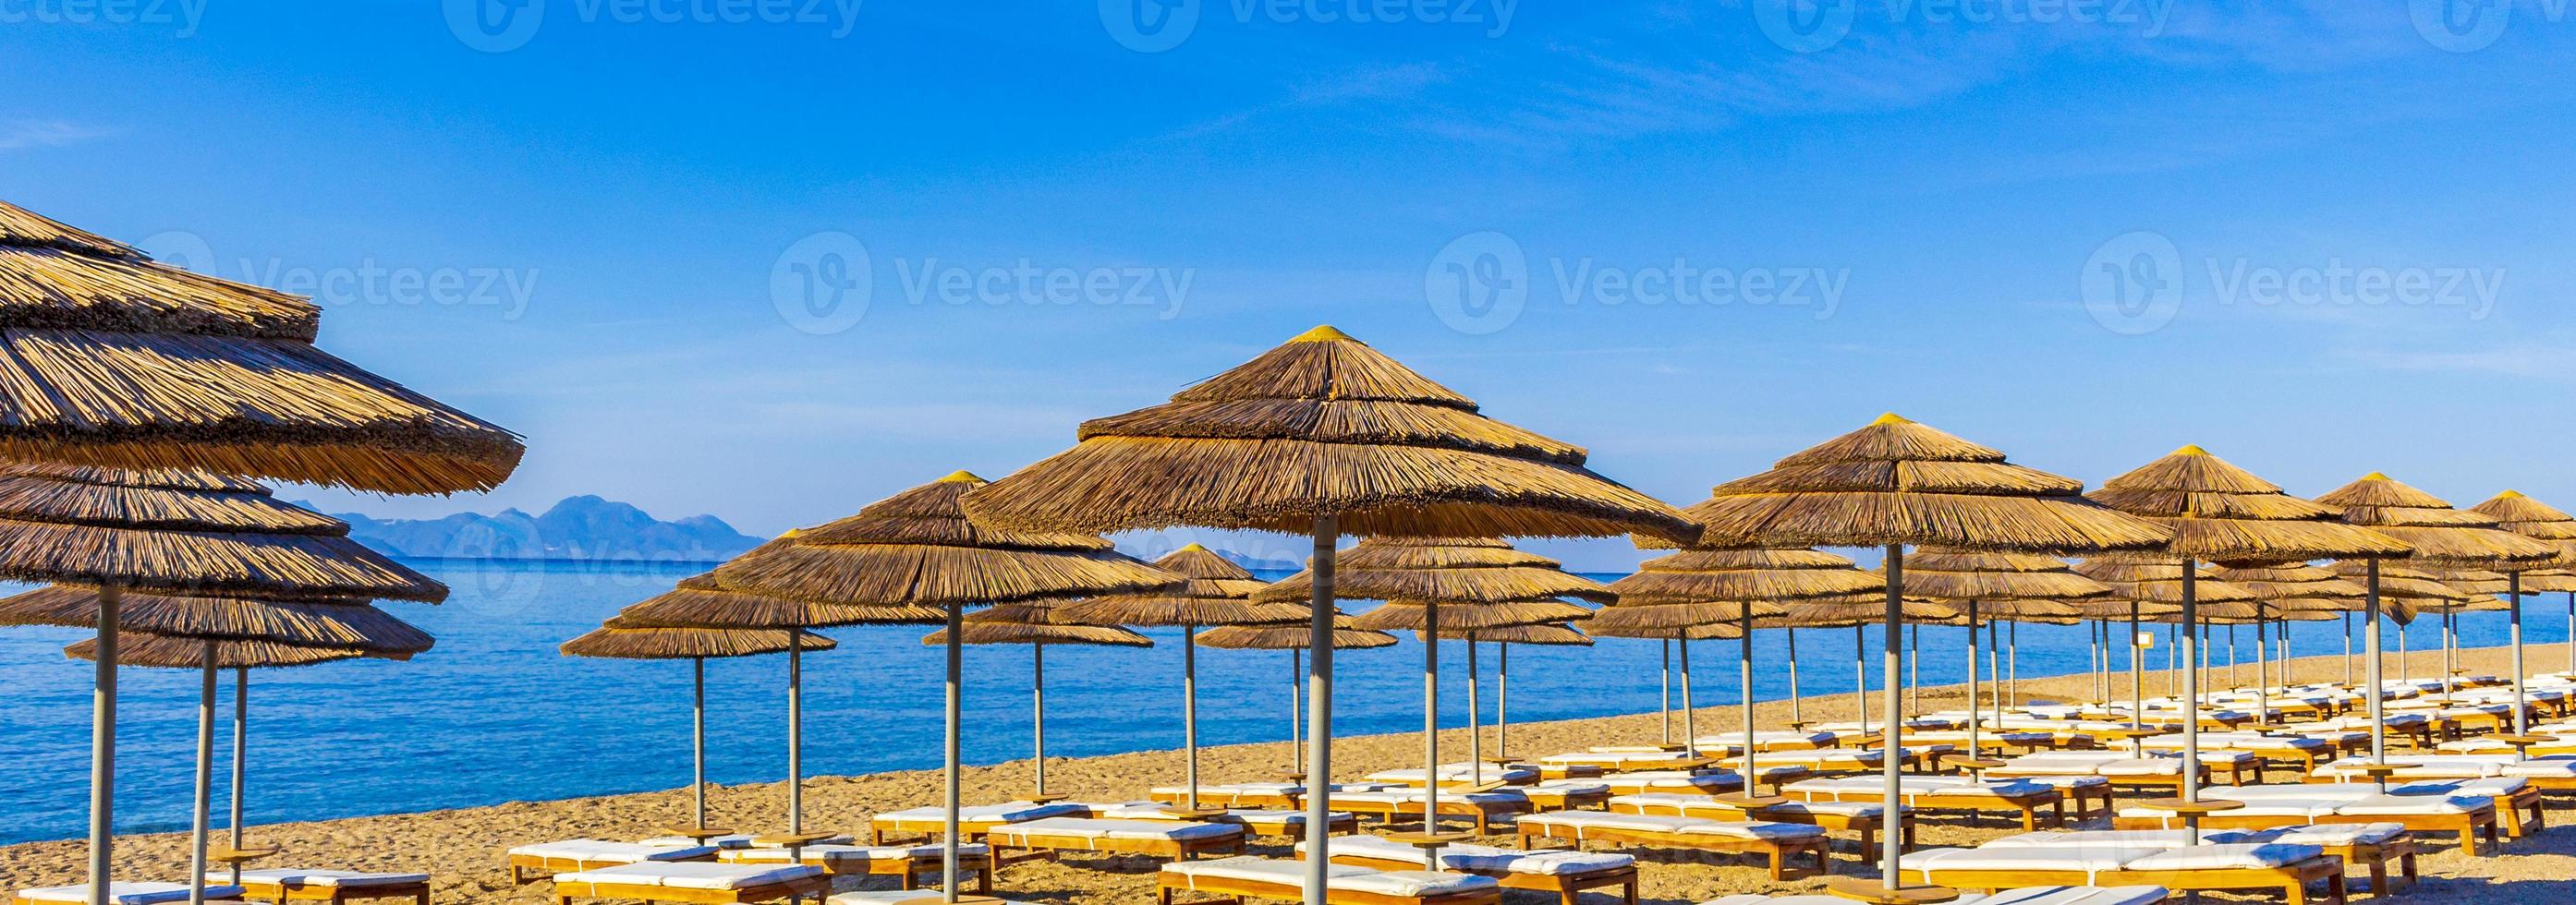 sedie a sdraio e ombrelloni sulla spiaggia isola di kos grecia. foto